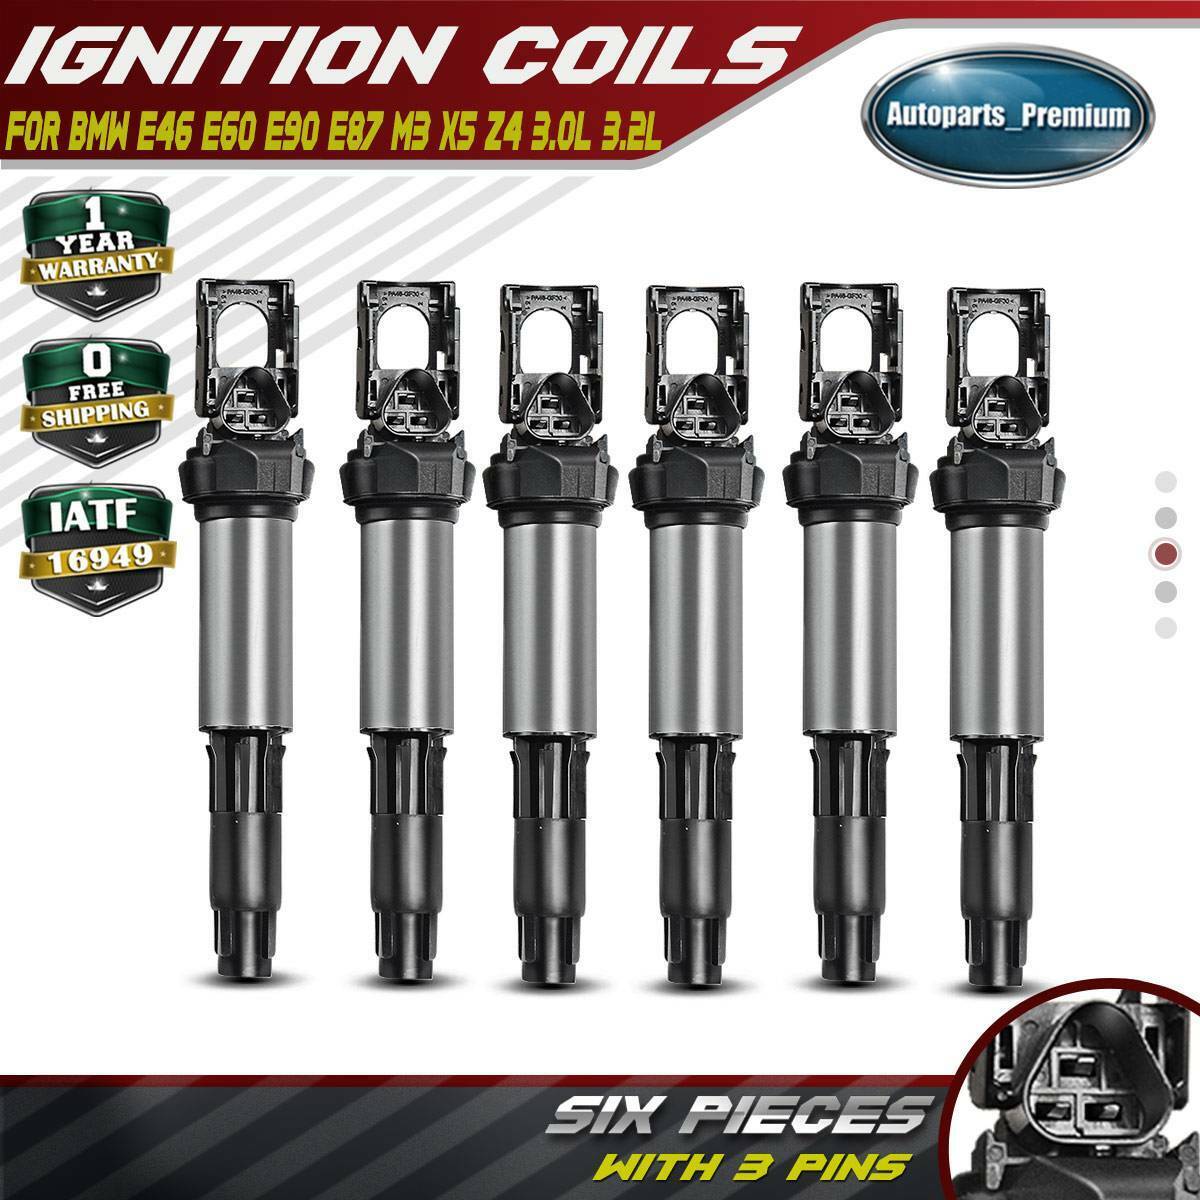 6Pcs Ignition Coils for BMW E46 E87 E90 330Ci 335i 525i 530i X3 X5 12131712219